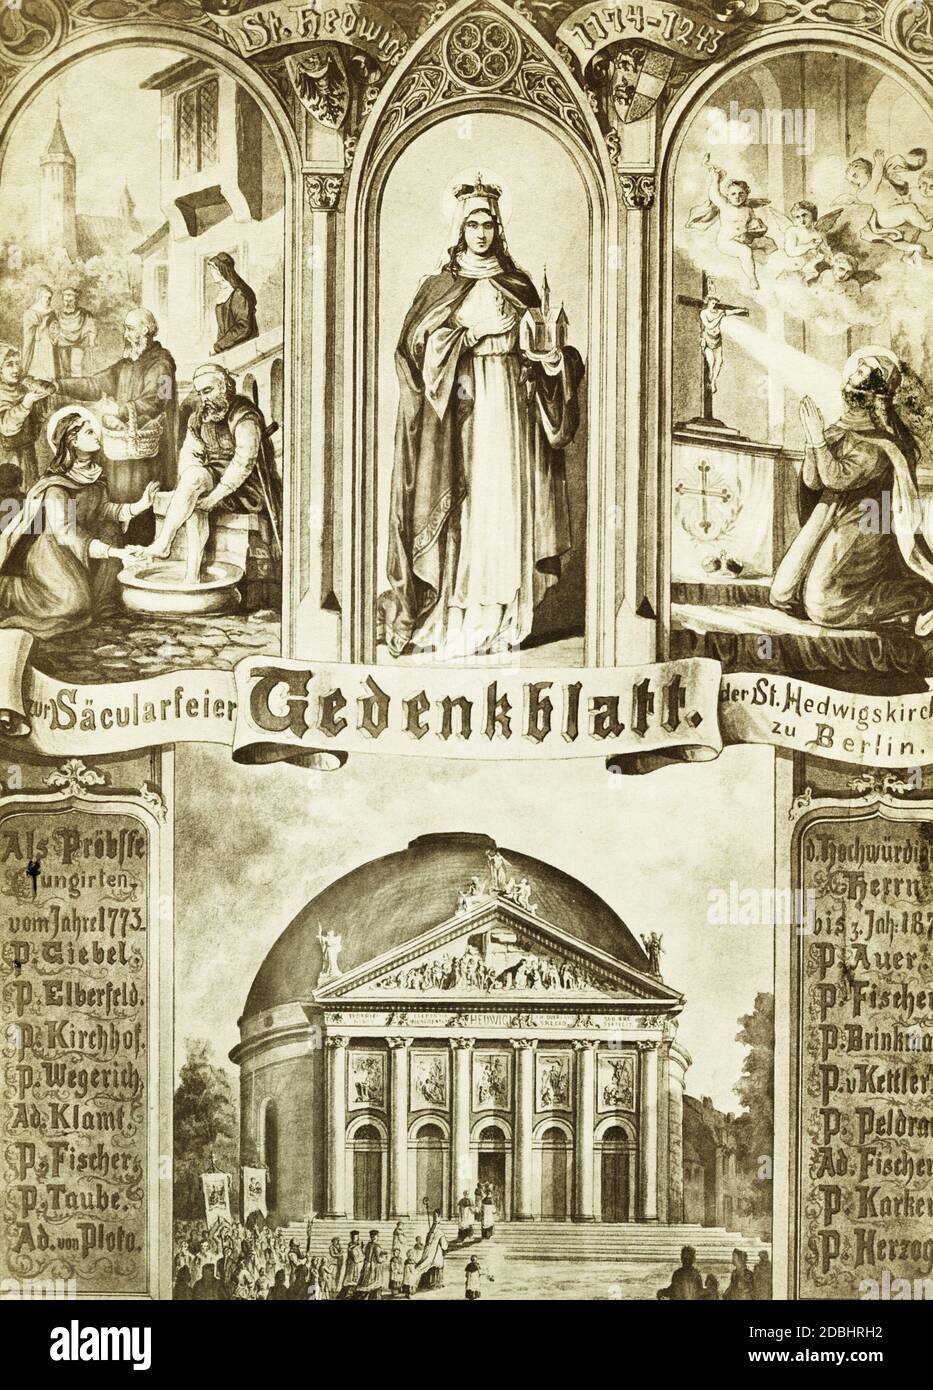 'La foto muestra el ''Gedenkblatt zur Saecularfeier der St. Hedwigskirche zu Berlin'' con una pintura de la patrona Hedwig. La Catedral de San Hedwig en Bebelplatz en Berlín-Mitte fue consagrada en 1773 y la parroquia celebró su centenario en 1873." Foto de stock